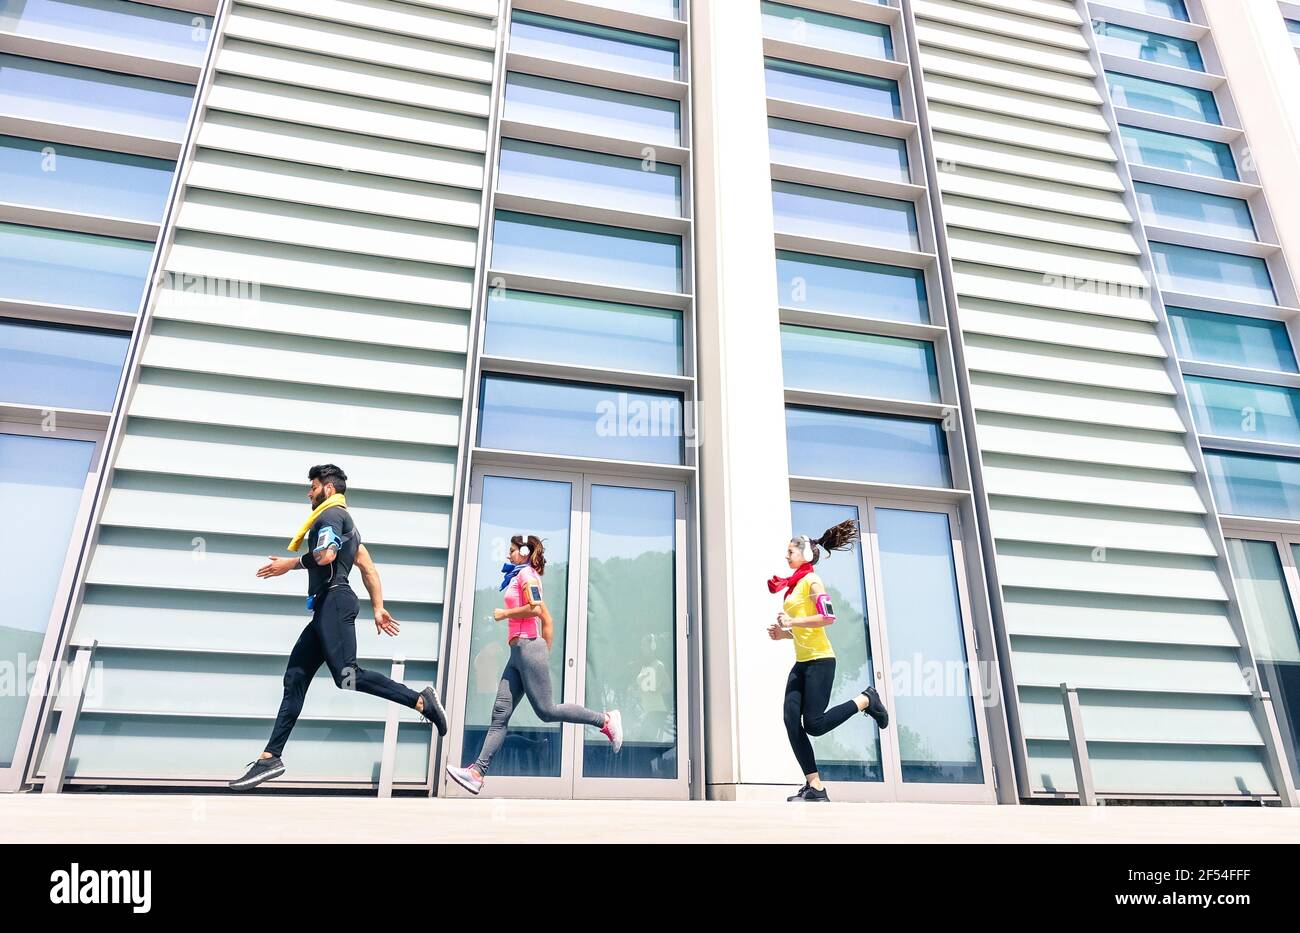 Gruppe von jungen Menschen laufen in modernen städtischen Bereich - Fitness-Mädchen laufen mit männlichen Trainer Trainer in der Stadt - Sportkonzept mit Freunden Joggen Stockfoto